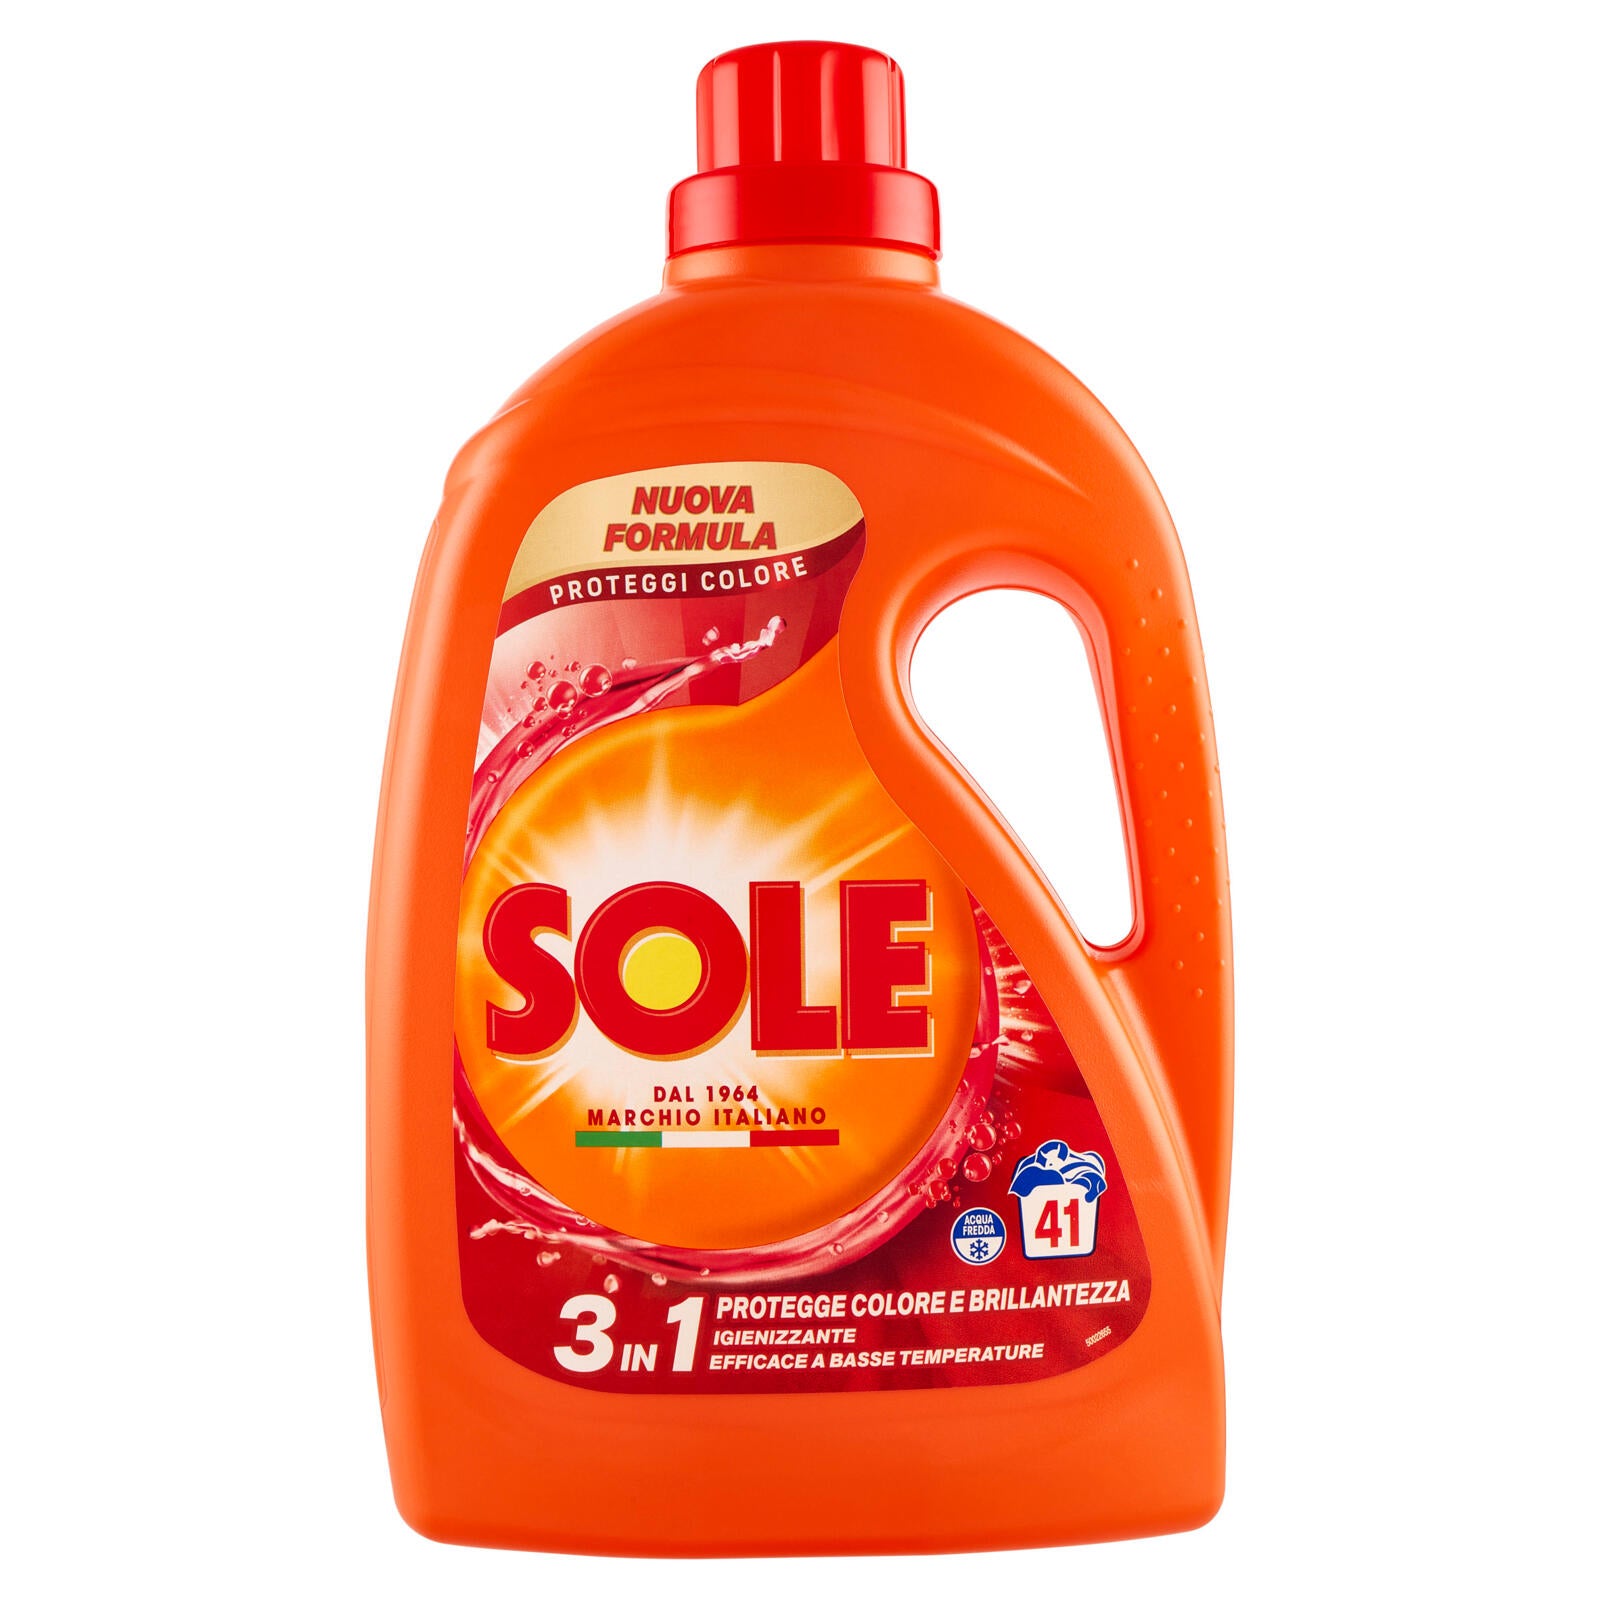 Sole Detersivo lavatrice Proteggi Colore 41 lavaggi 1,845 L ->